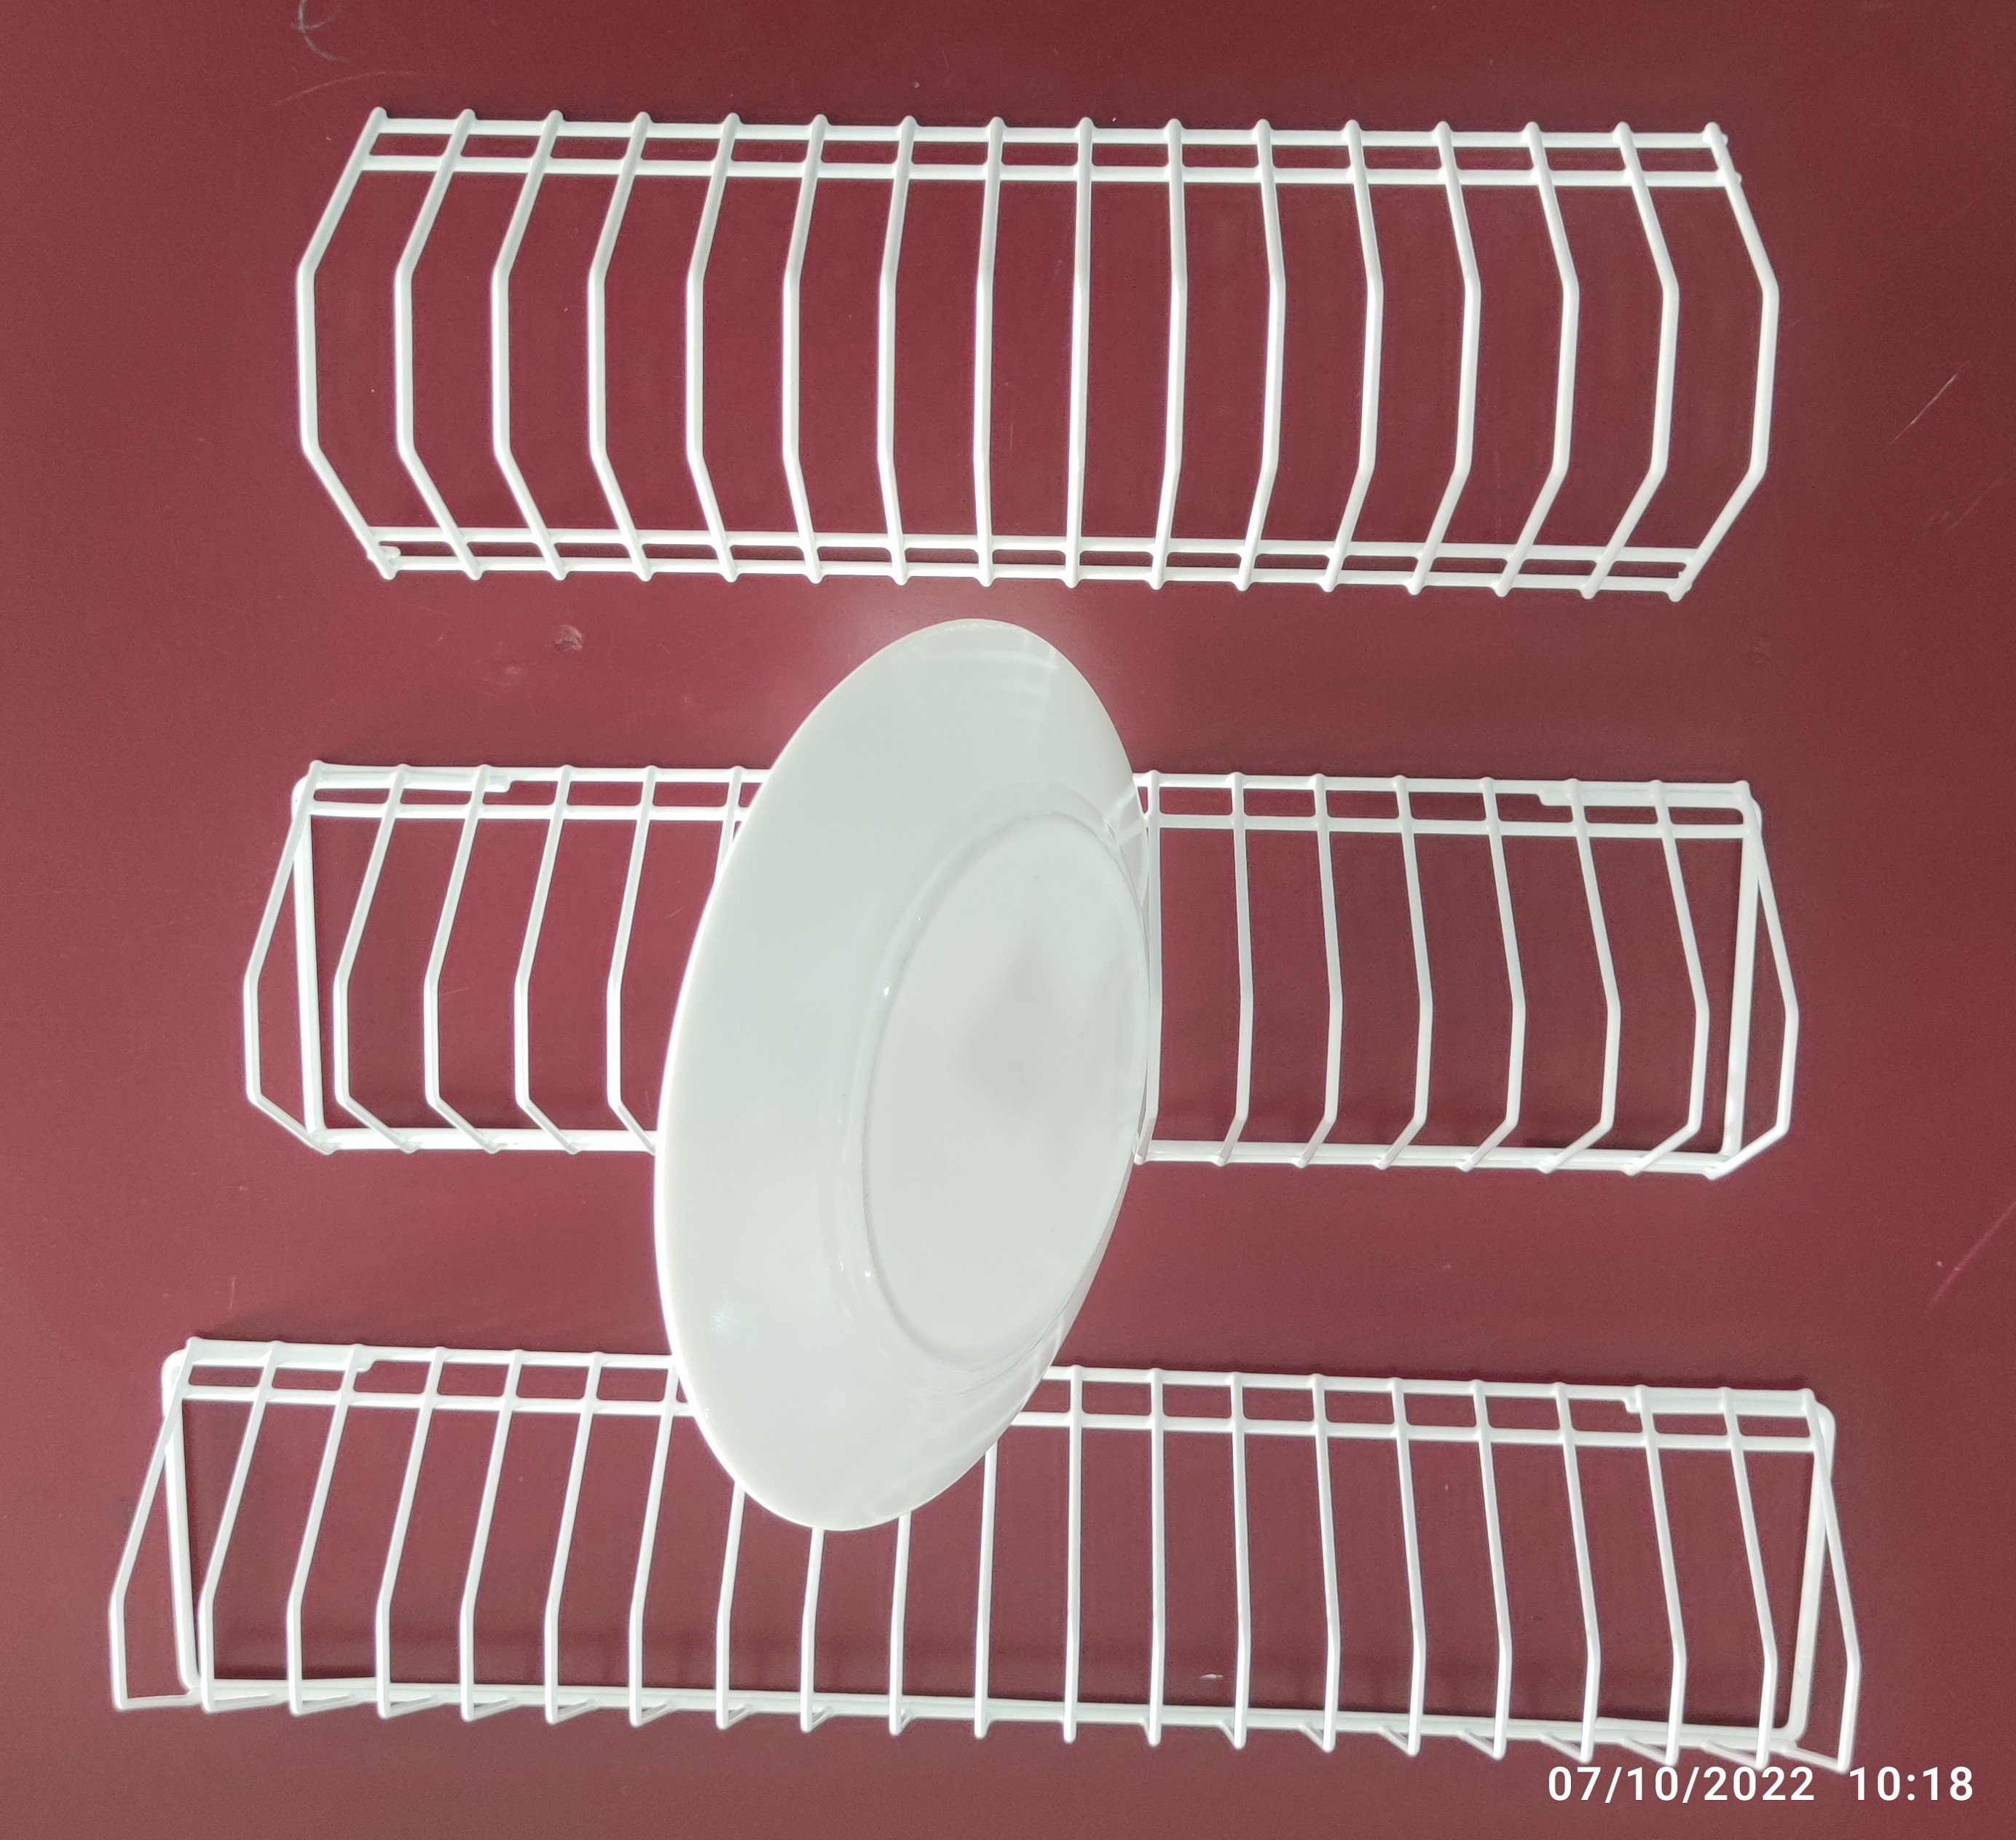 https://preciosfactory.com/tienda/44457/inserto-platos-cesta-lavavajillas.jpg